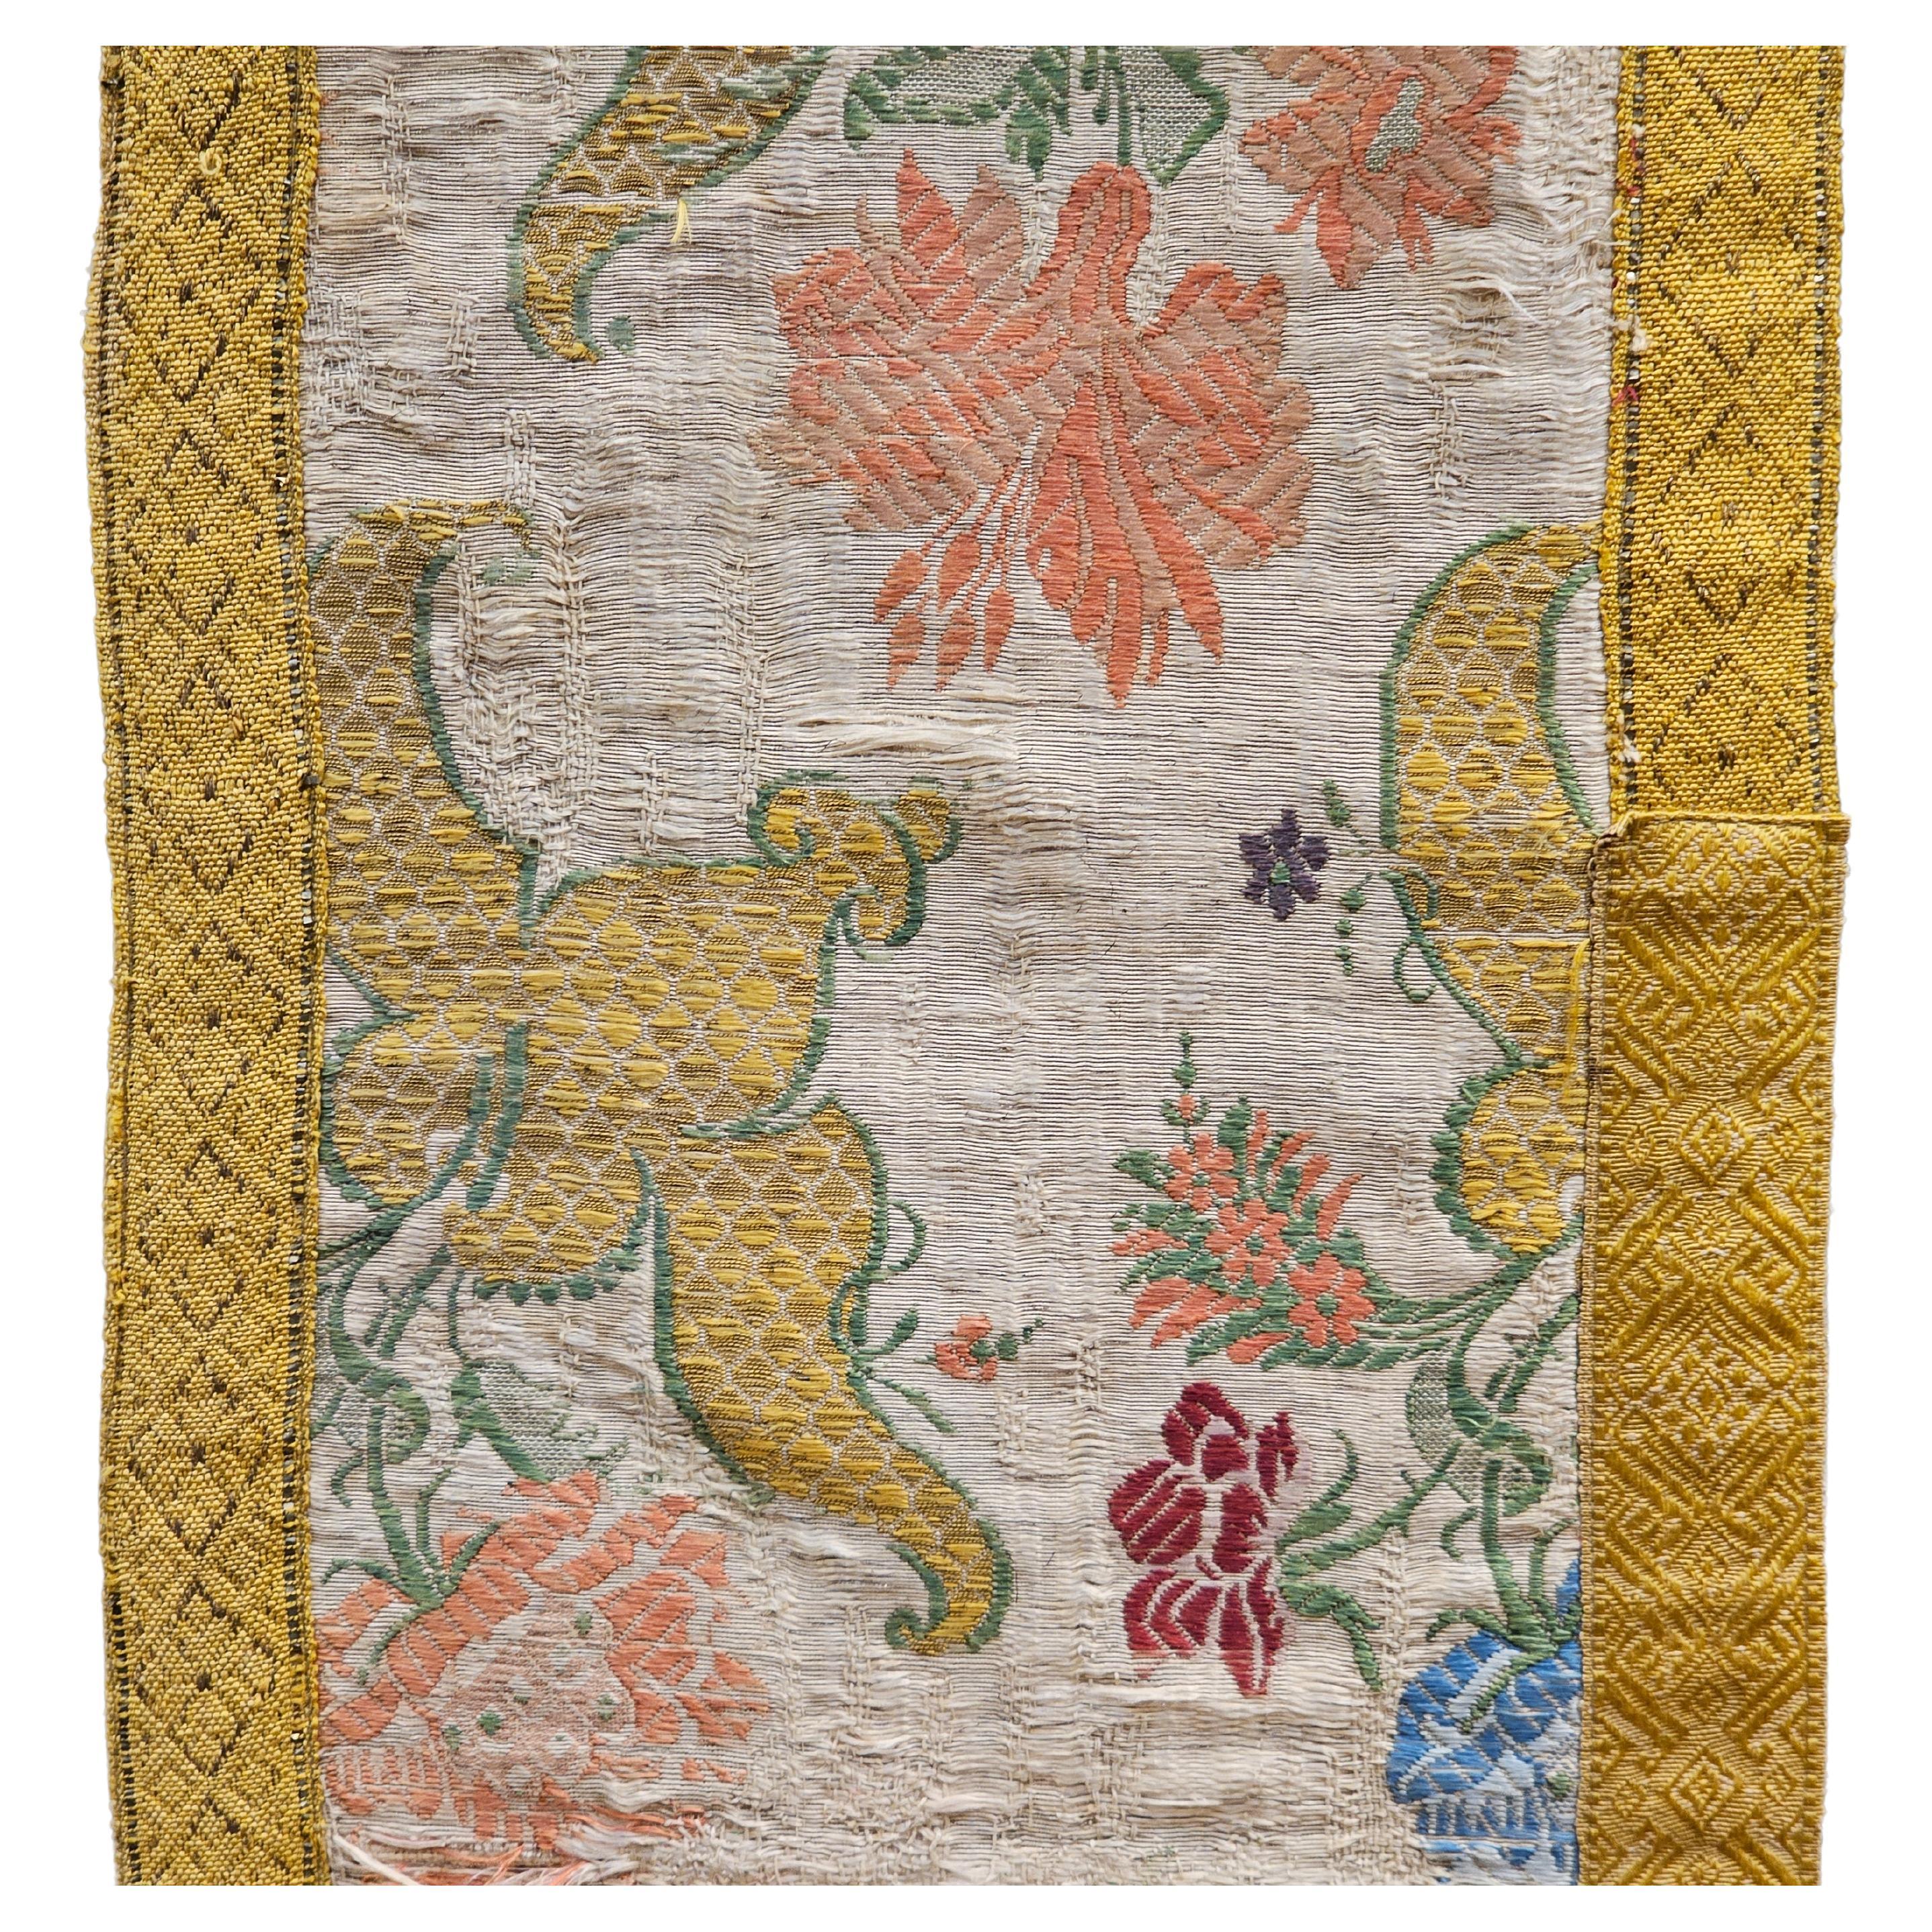 Europäische handbestickte Textiltafel aus Seide und vergoldeten Fäden aus dem 18. Jahrhundert